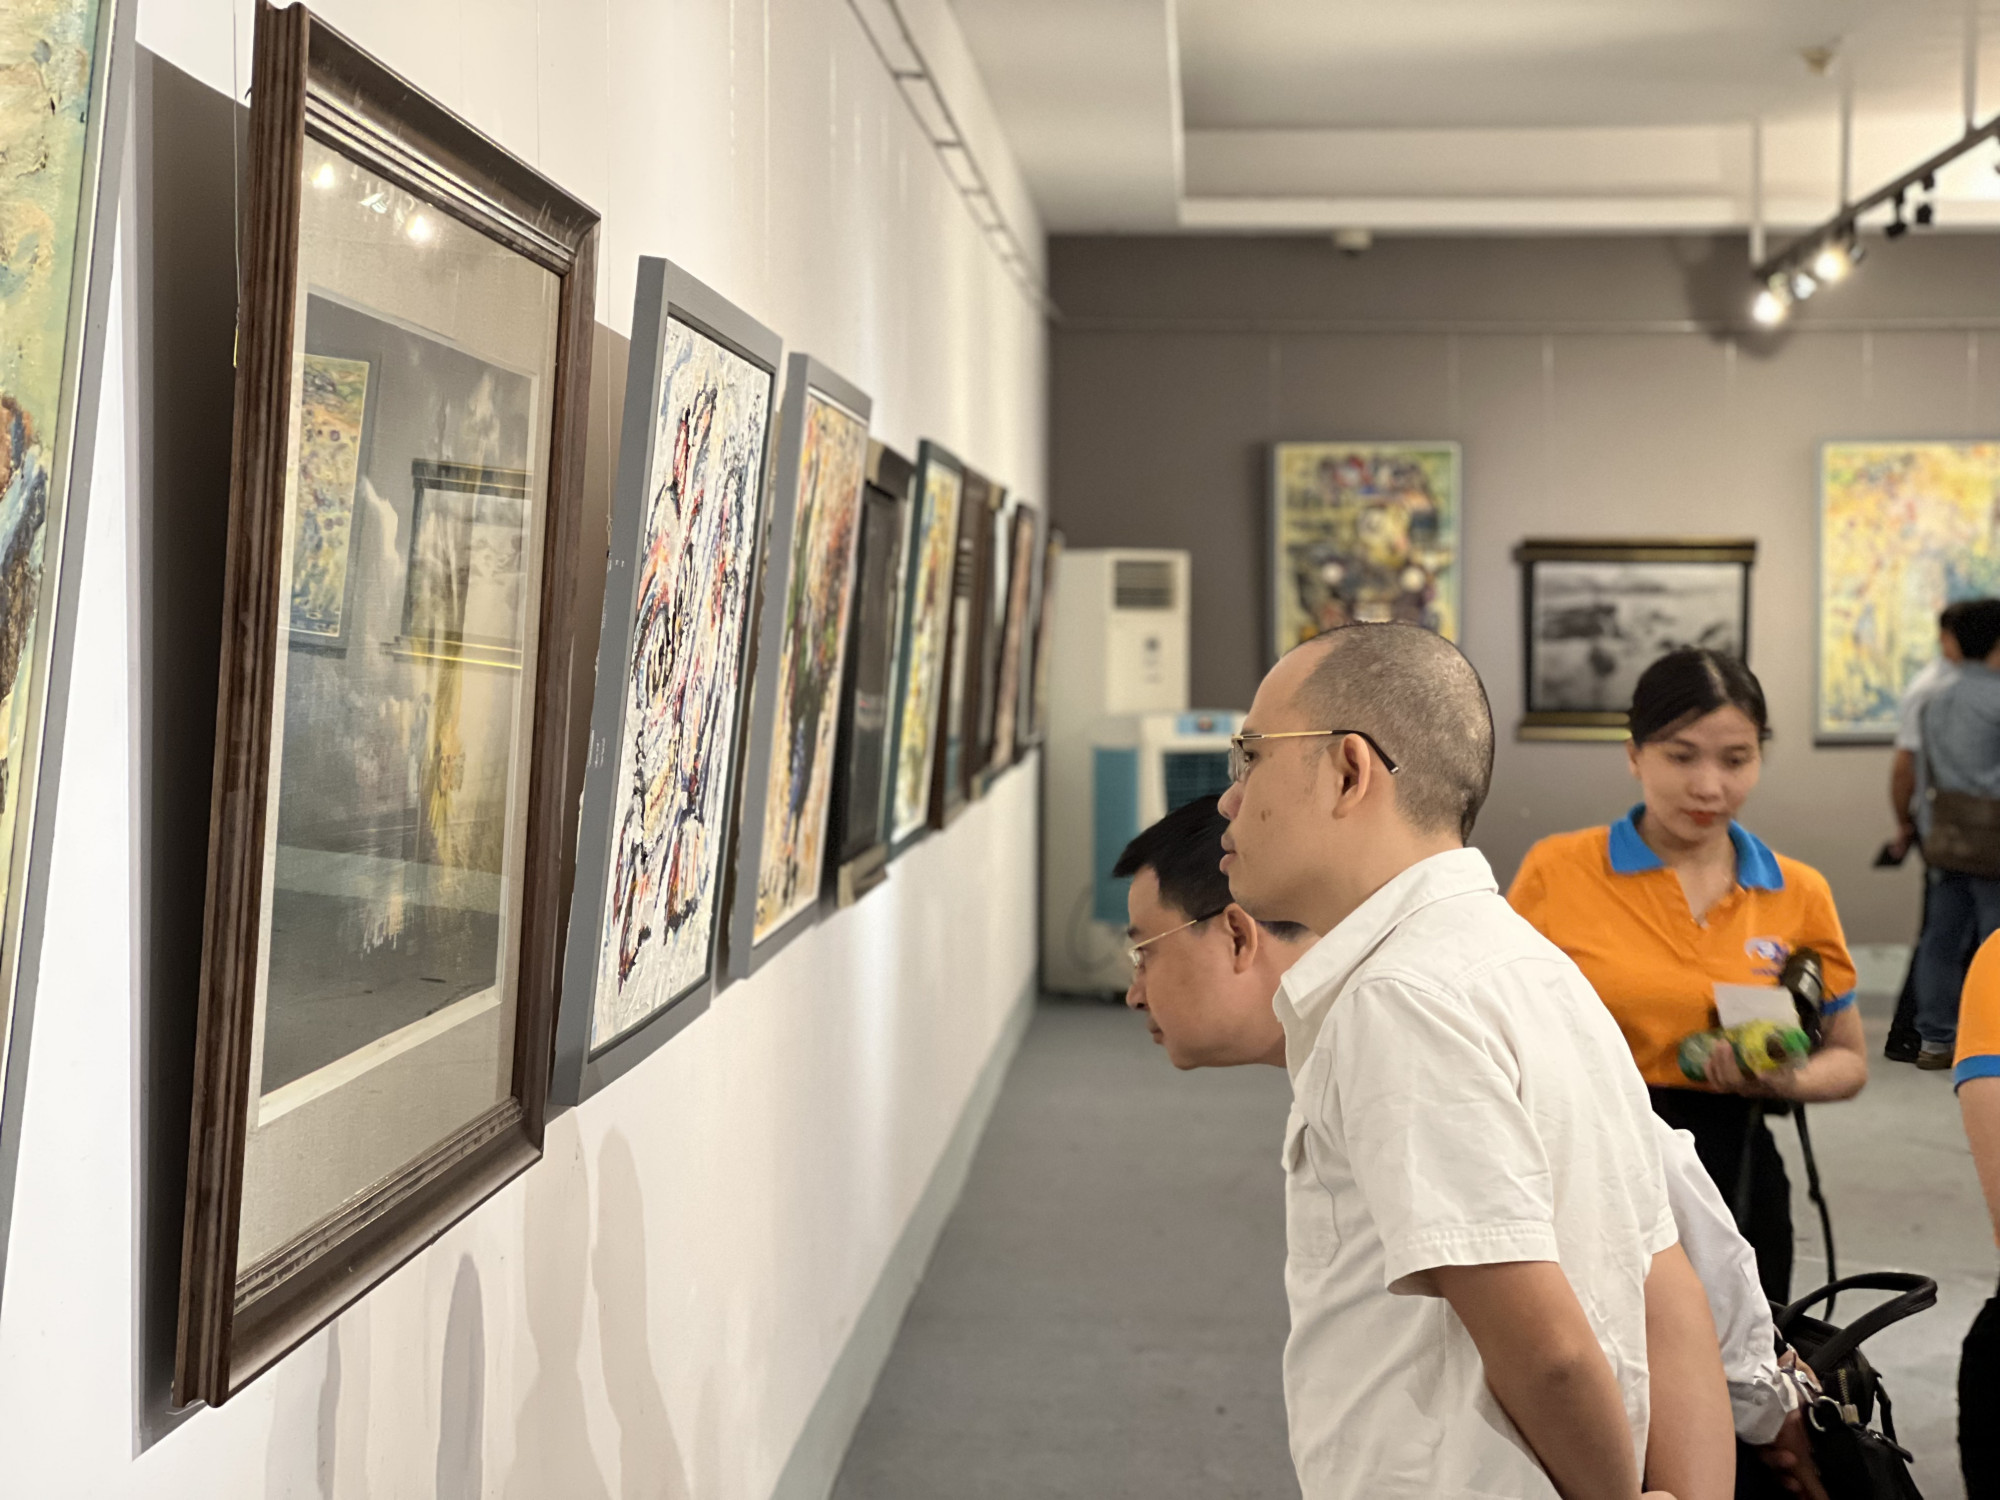 Sáng 23/12, triển lãm Vũ điệu cuộc sống - Nơi cảm xúc tìm về của 2 hoạ sĩ Trần Trọng Đạt và Nguyễn Ngọc Vinh khai mạc tại Bảo tàng Mỹ thuật TPHCM. Triển lãm gồm 76 tác phẩm. 